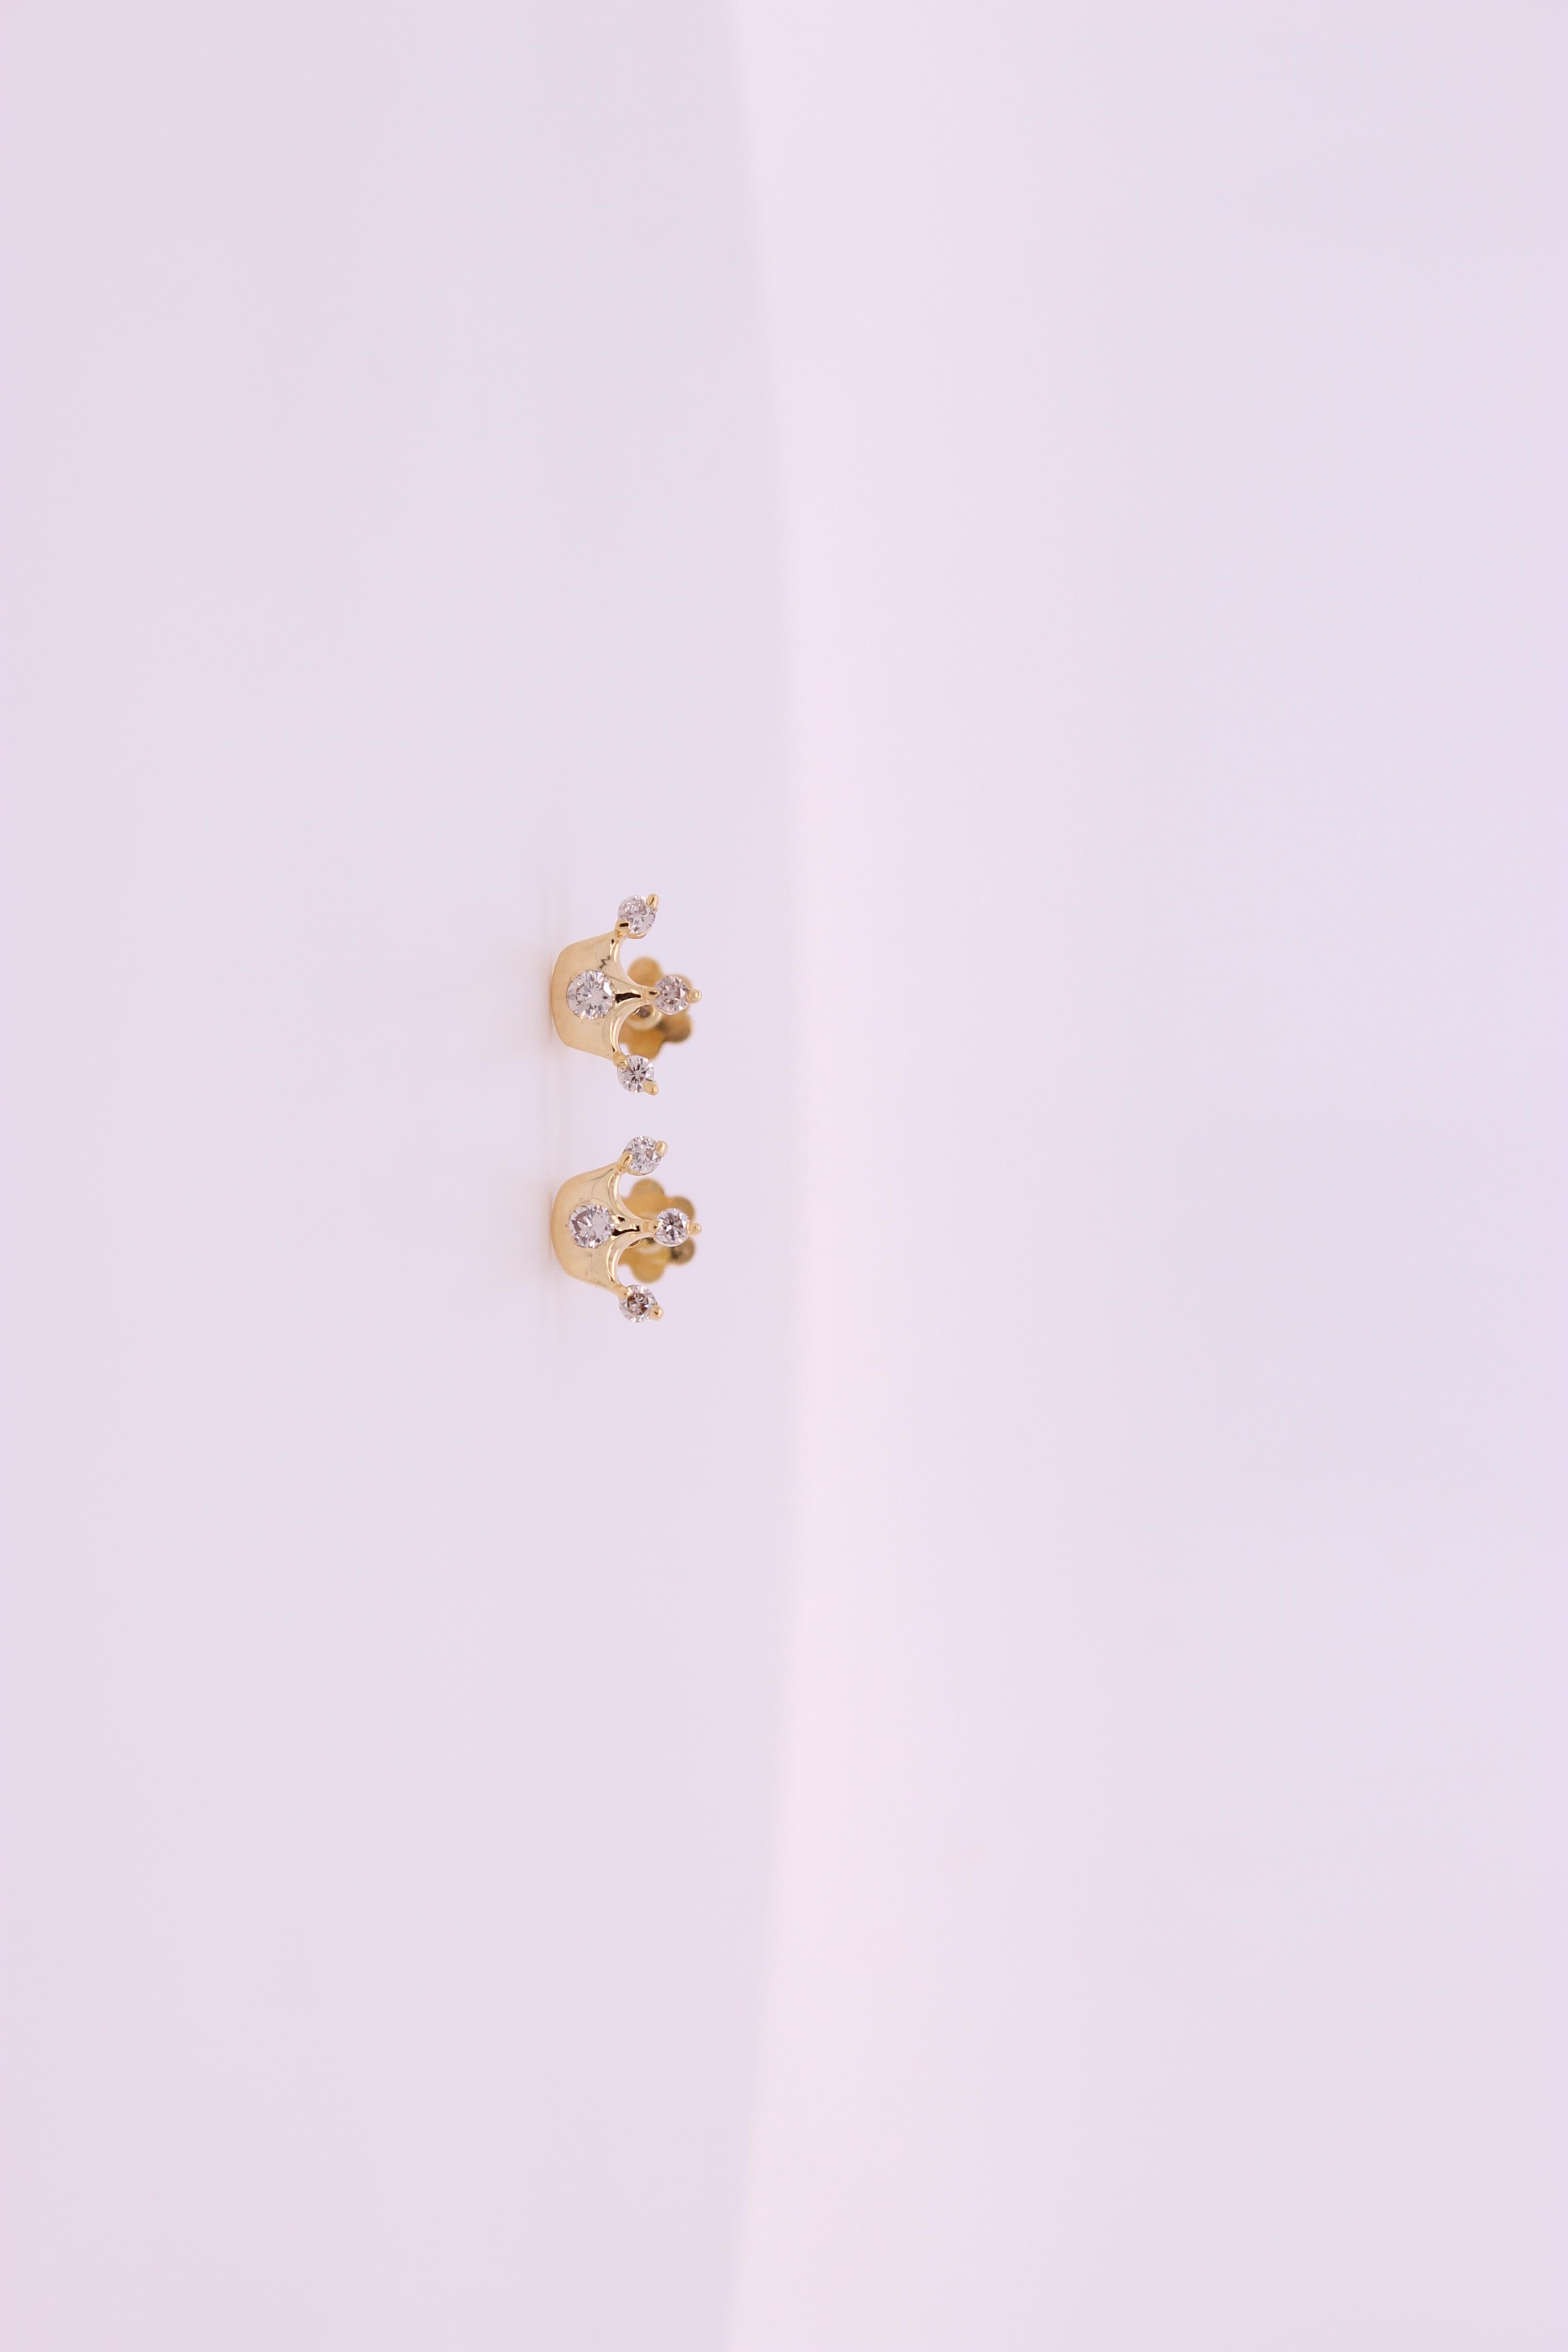 Regal Crown Diamant Ohrringe für Mädchen (Kinder/Kleinkinder) in exquisitem 18K Solid Gold. Diese bezaubernden Ohrringe sind mit zarten Diamanten verziert und verleihen dem Look Ihrer Kleinen einen Hauch von königlicher Eleganz. Gleichzeitig sorgen